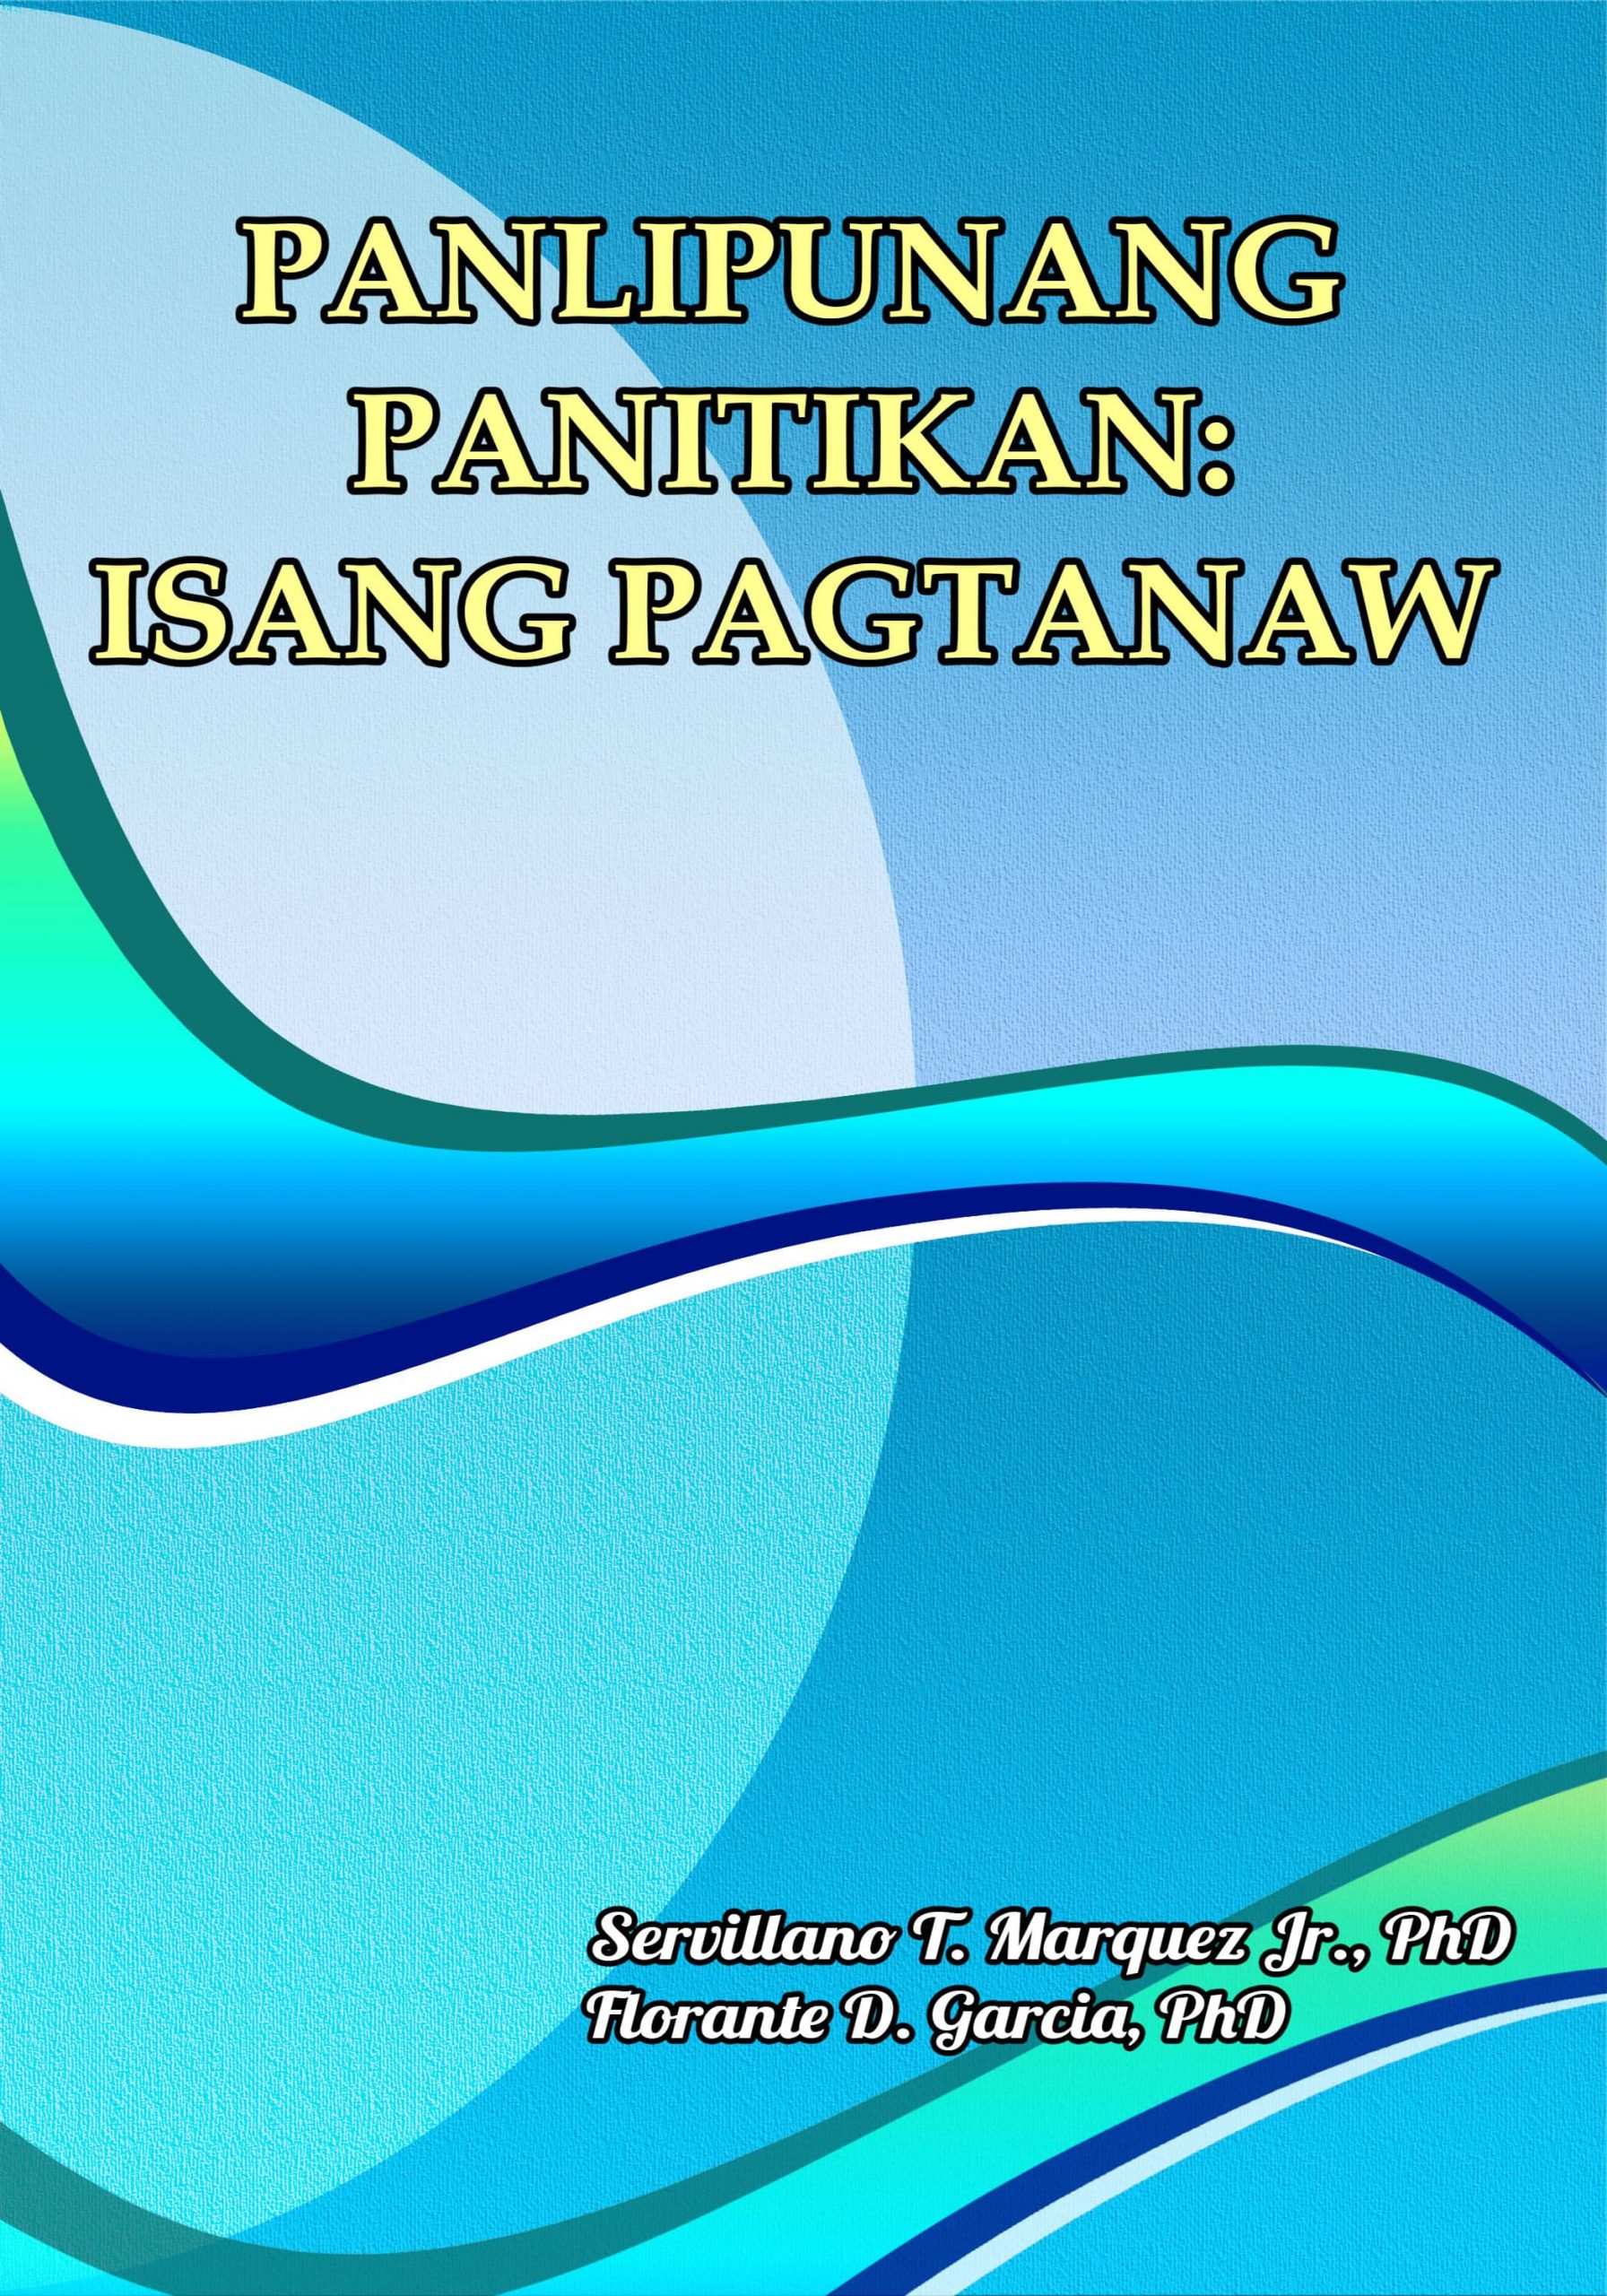 Panlipunang Panitikan: Isang Pagtanaw | Books Atbp. Publishing Corp.